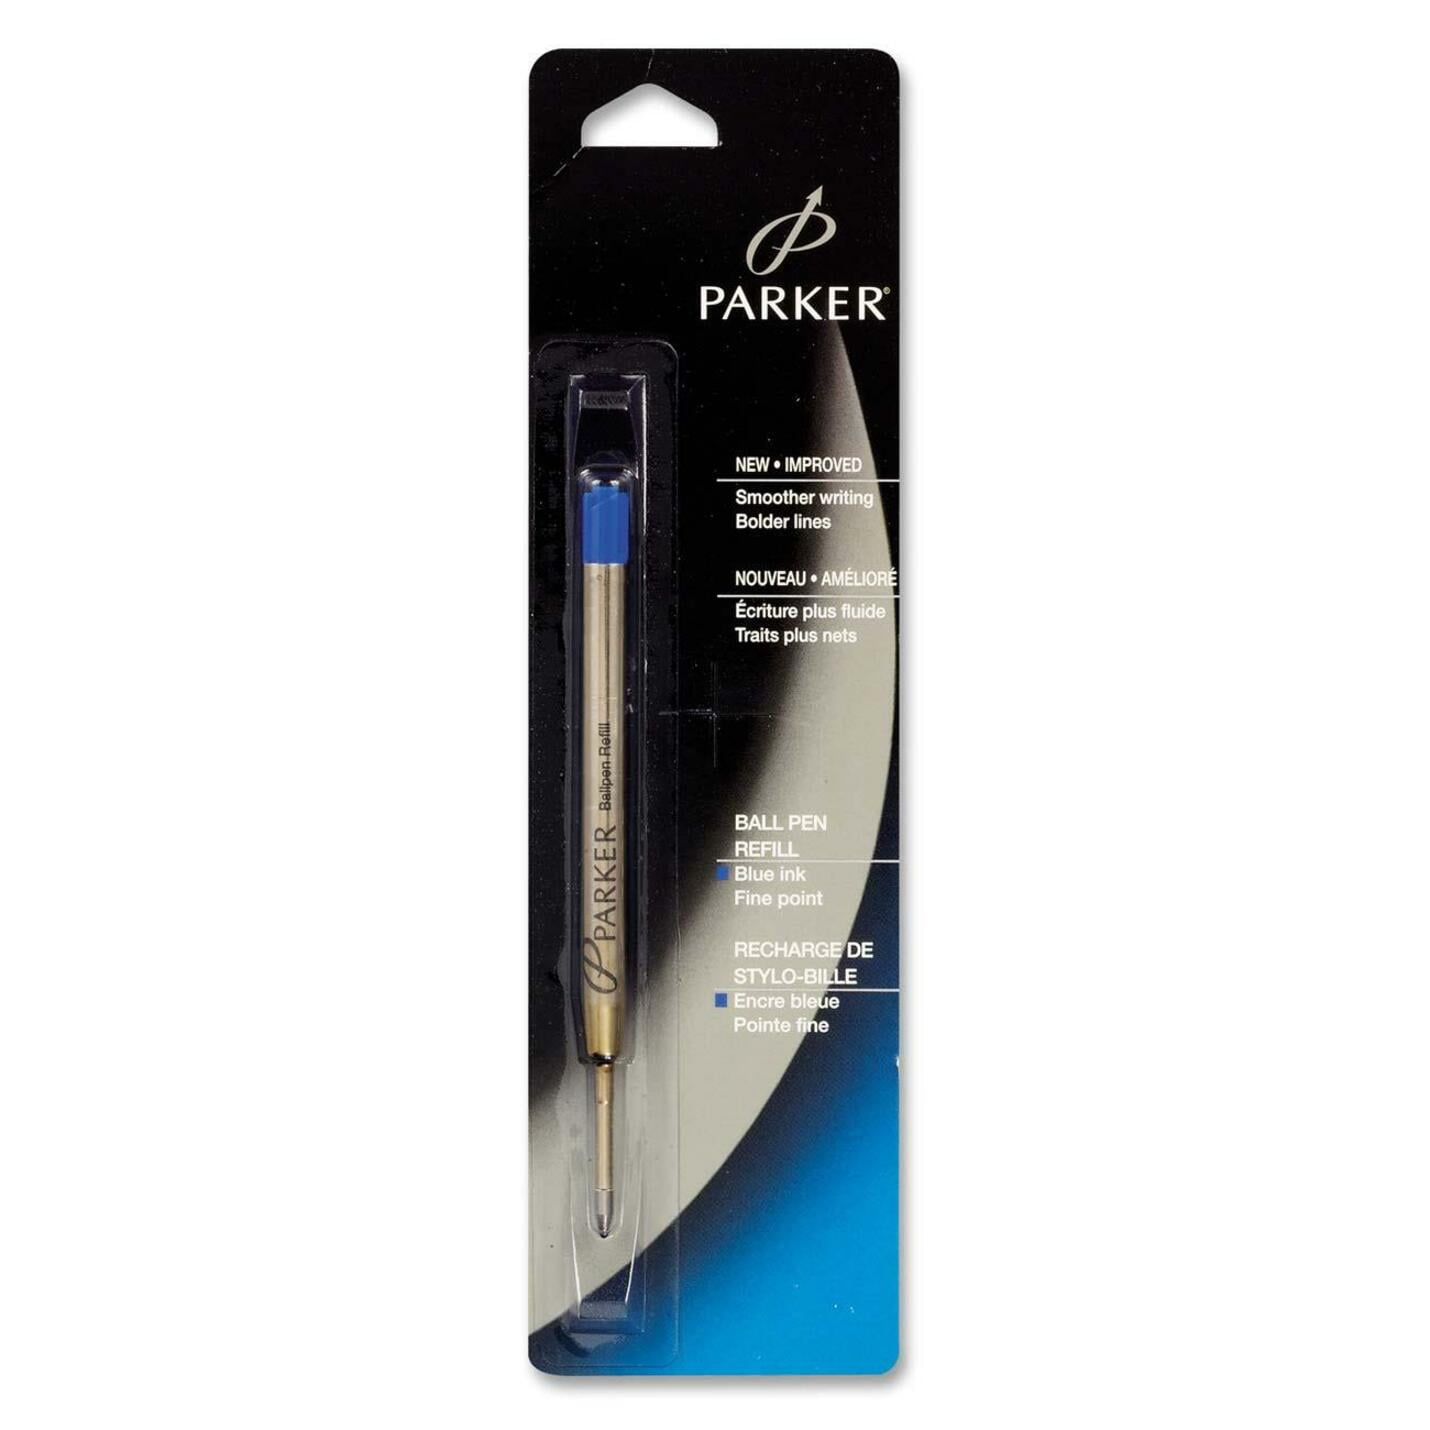 Parker QuinkFlow Ballpen Medium Point Blue Ink Refill Pack of 4-Refills 